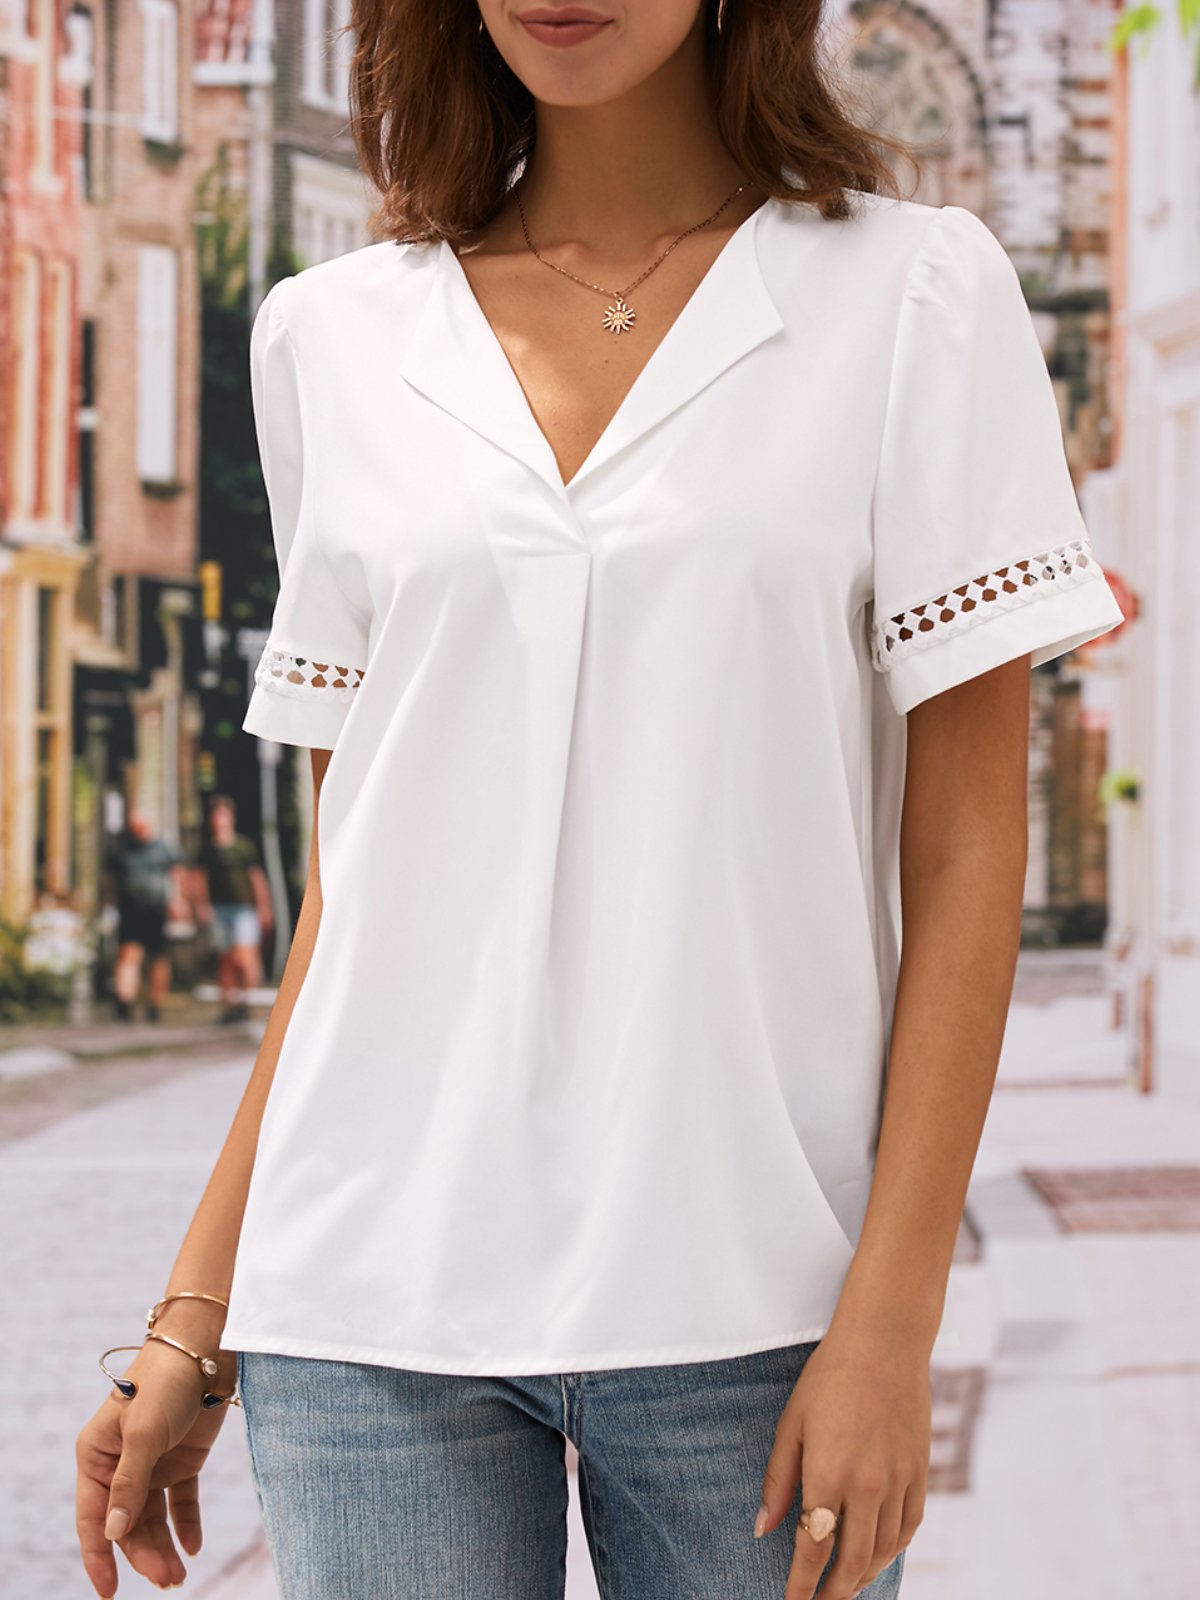 Damen Kurzarm Bluse Sommer Weiß Unifarben Perforiert Schalkragen Täglich Ausgehen Einfach Oberteile